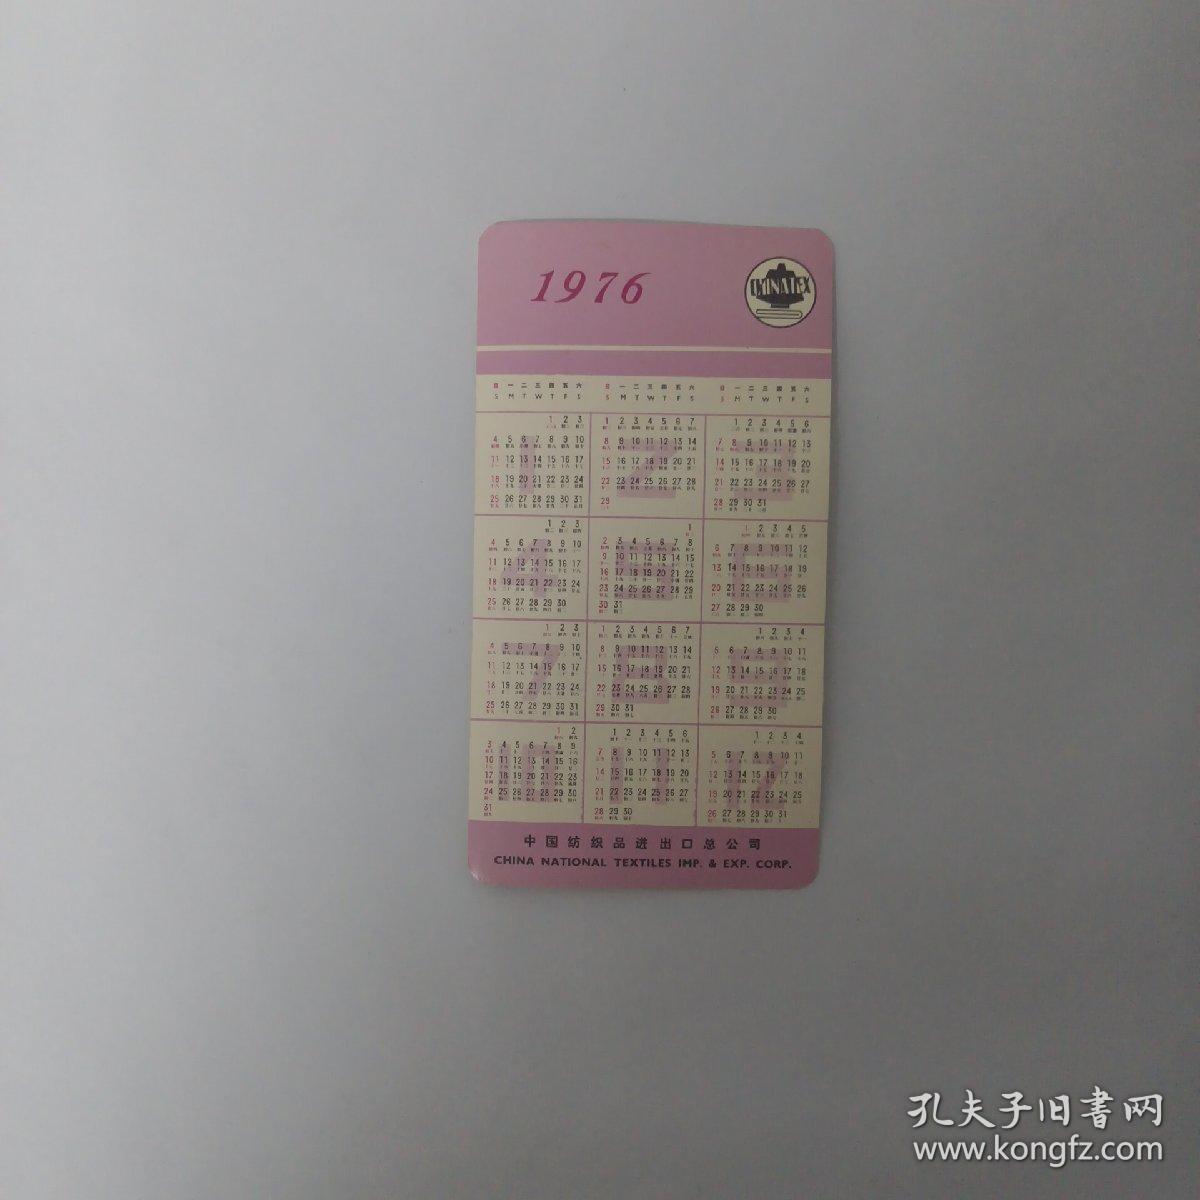 1976年中国纺织品进出口总公司公社葡萄亚克西 日历卡